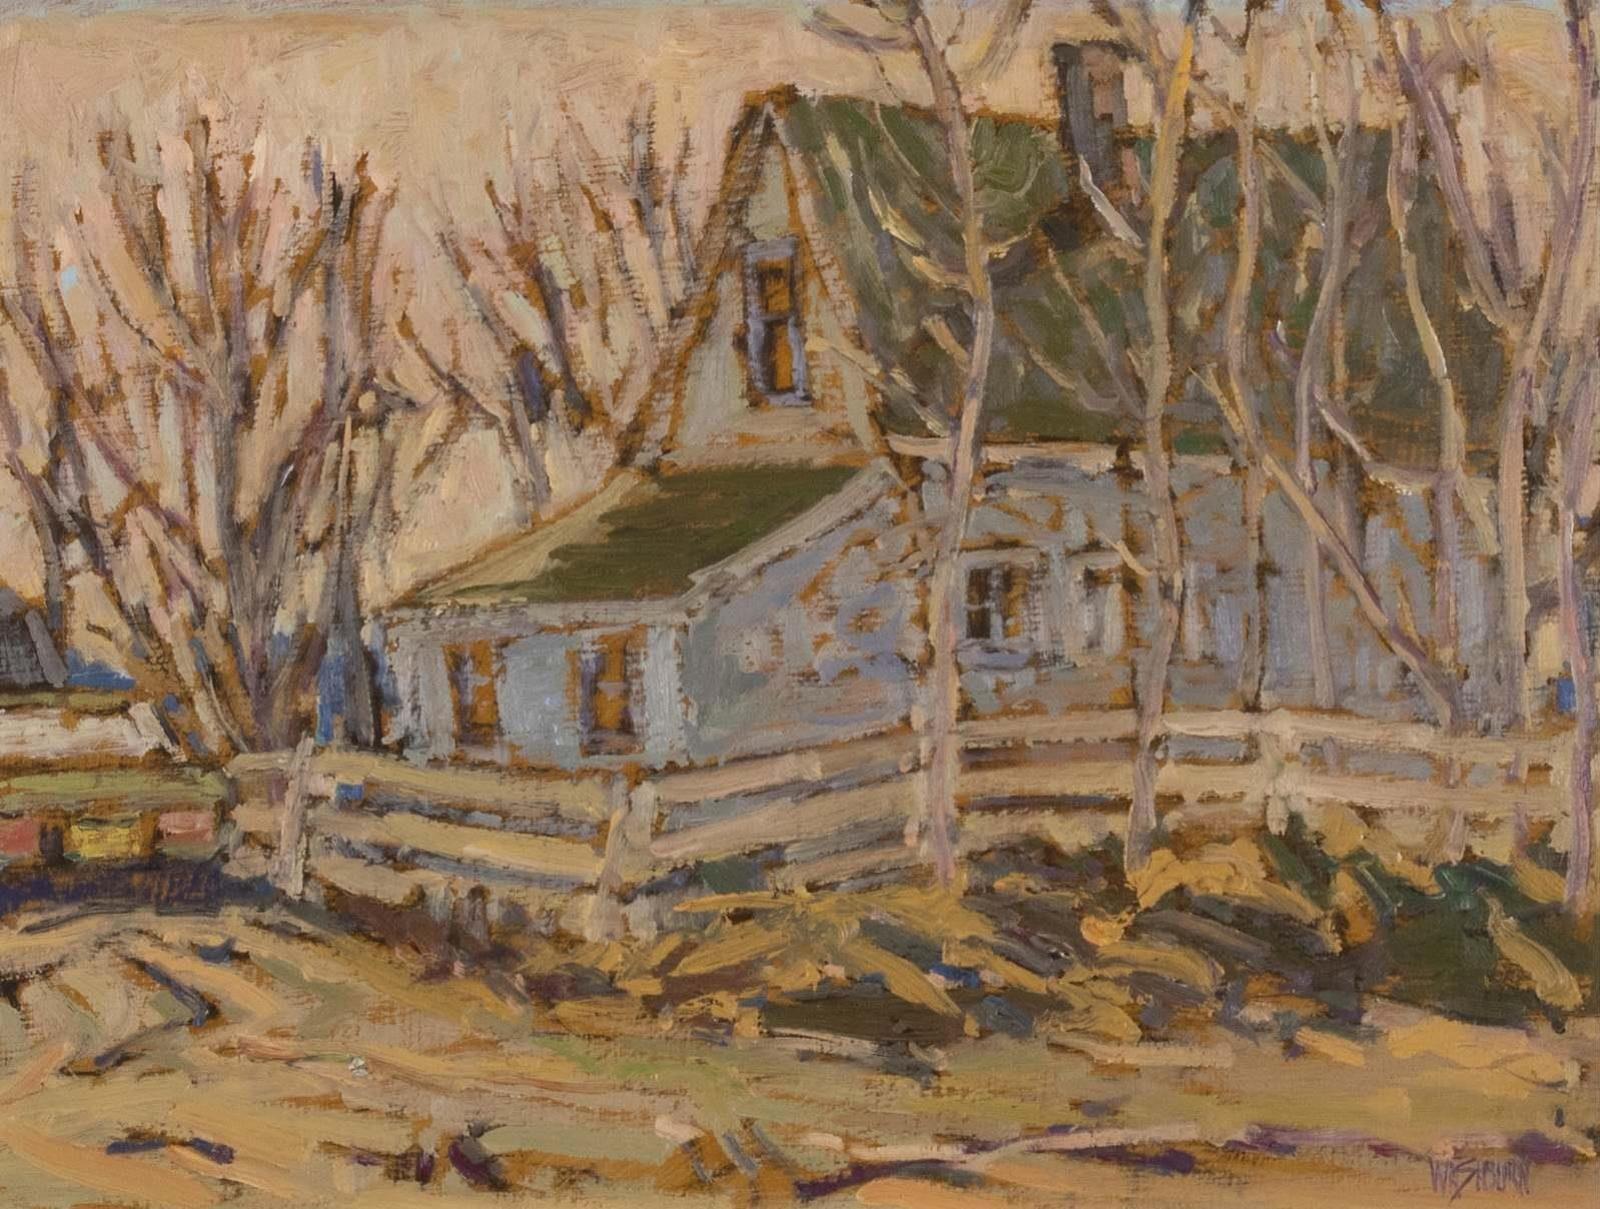 Lawrence Washburn (1940) - Crossfield Farm; 1982